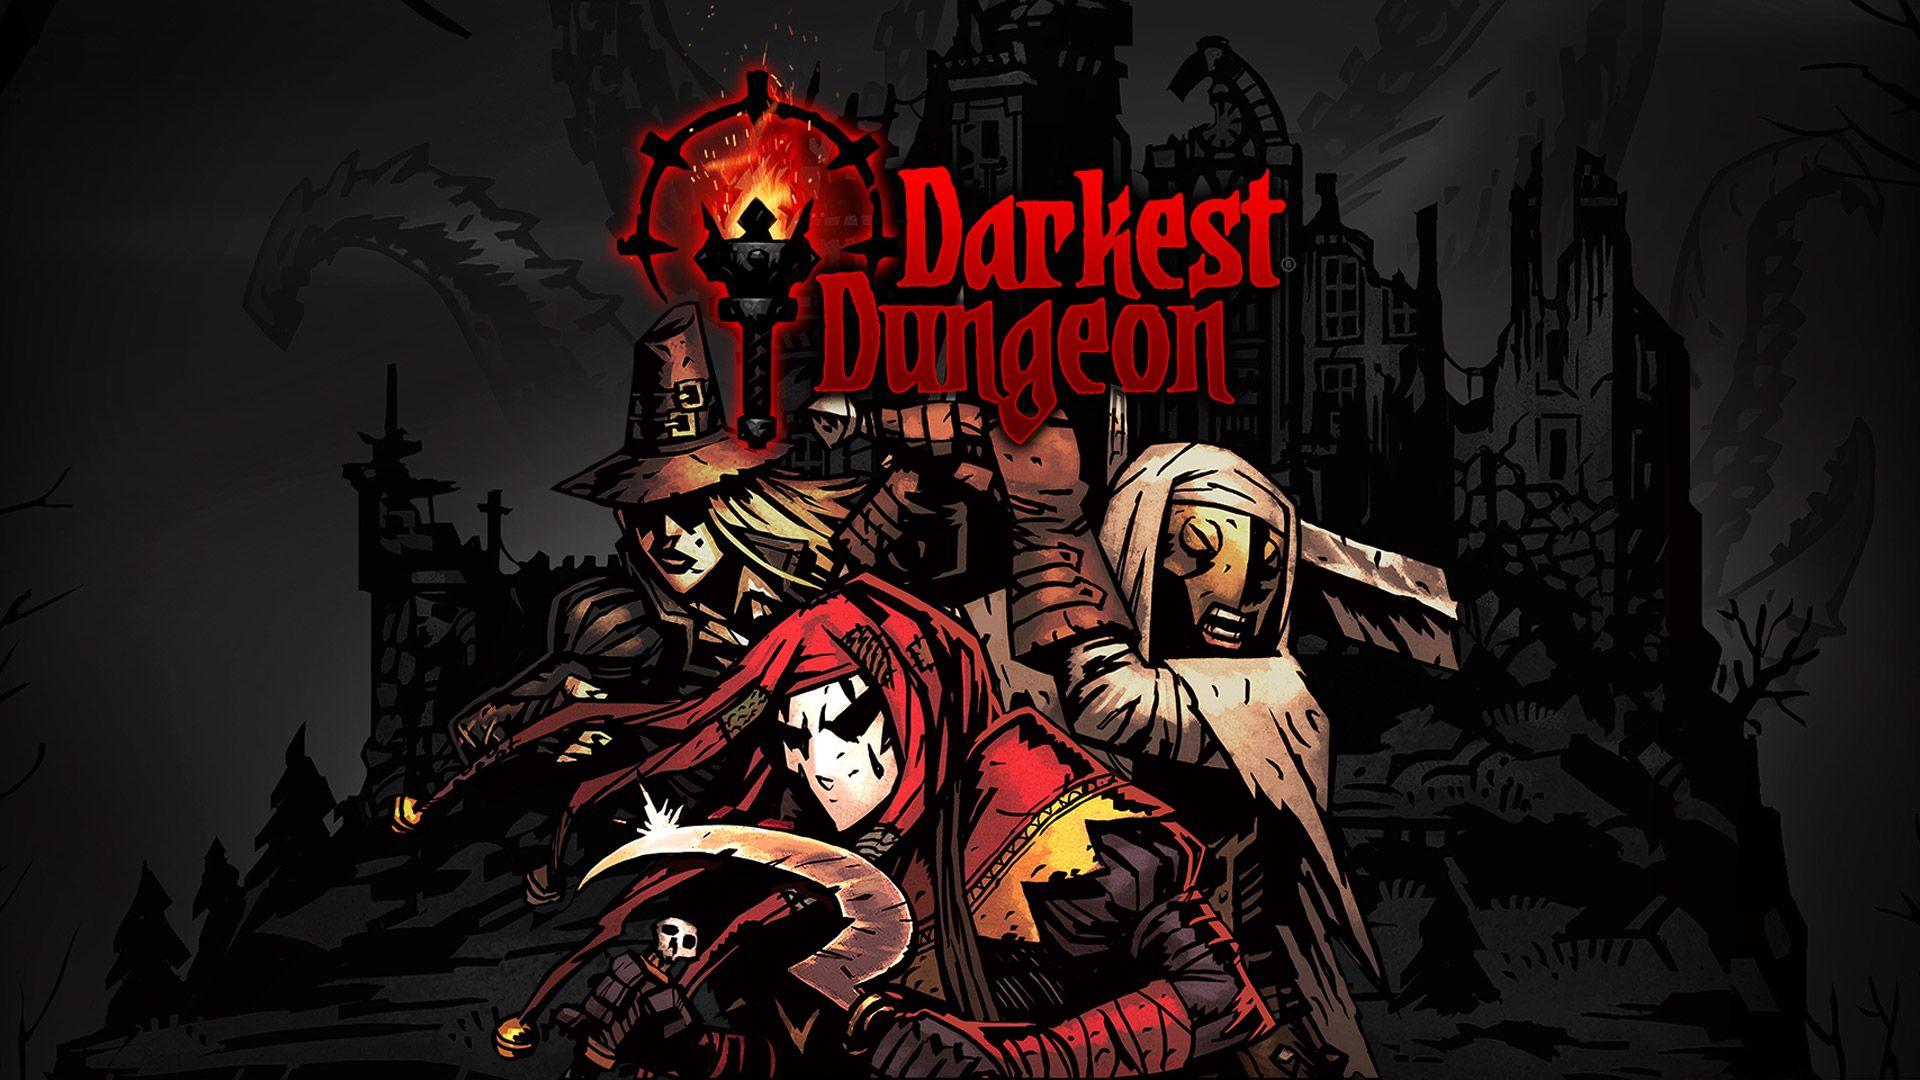 Darkest dungeon keyart picture